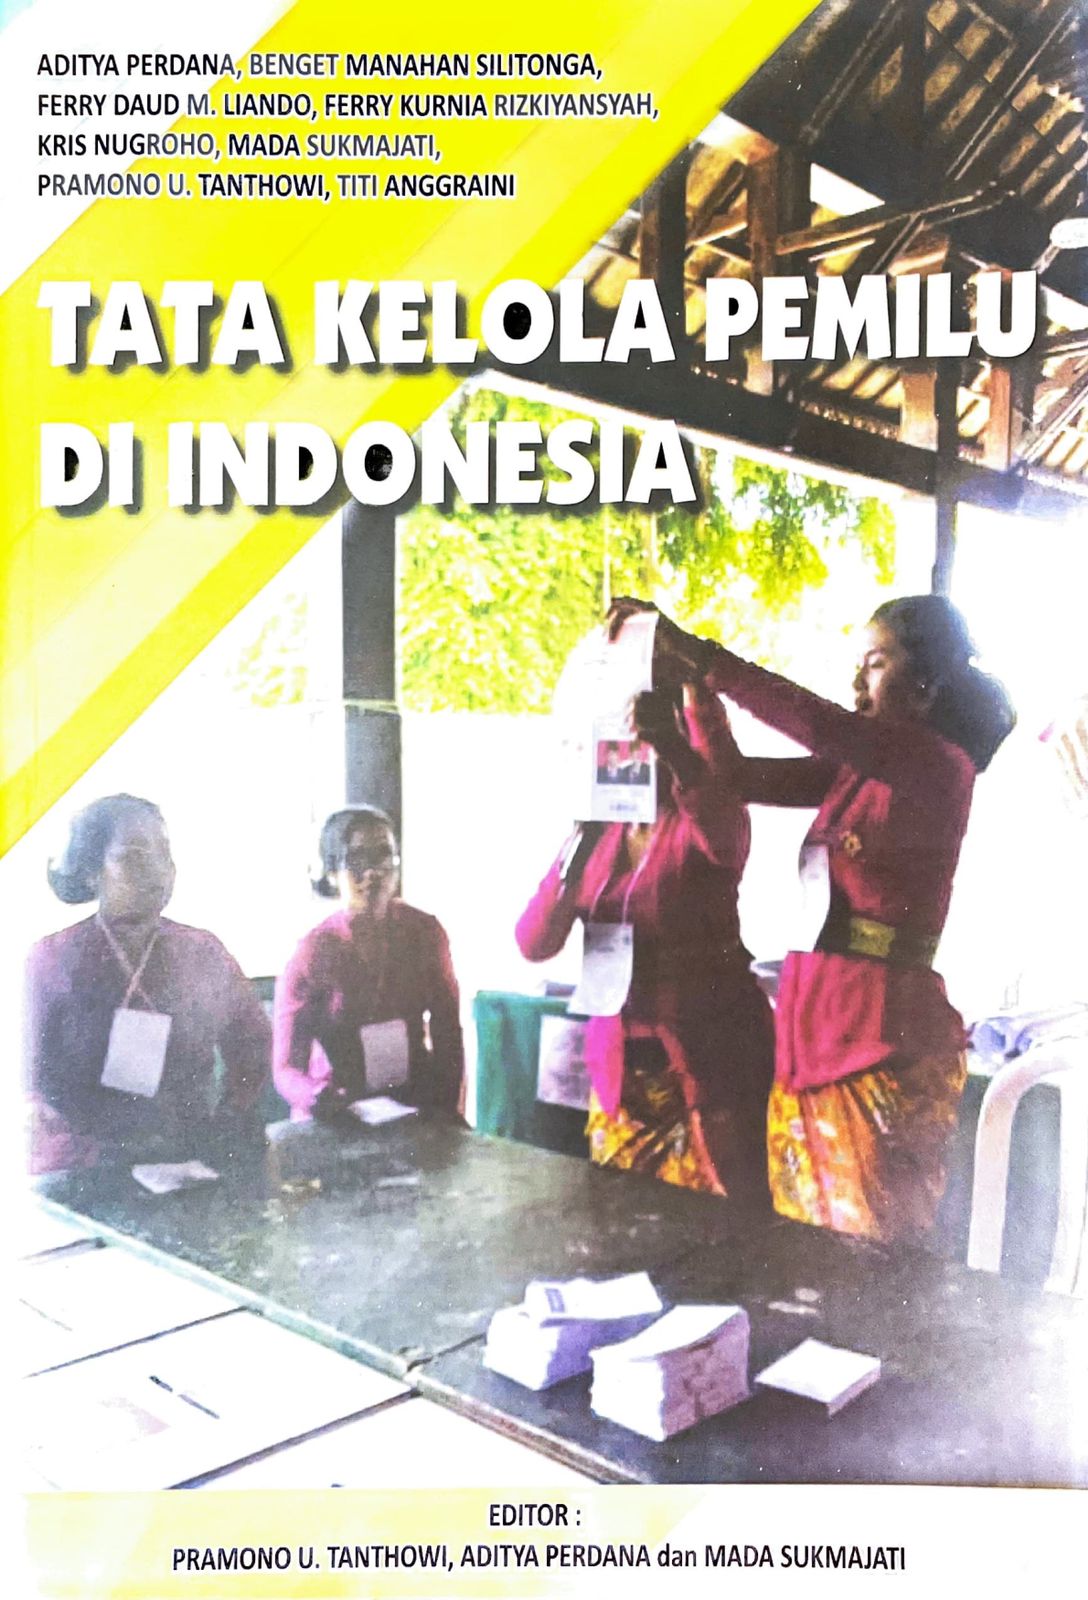 Tata kelola pemilu di indonesia